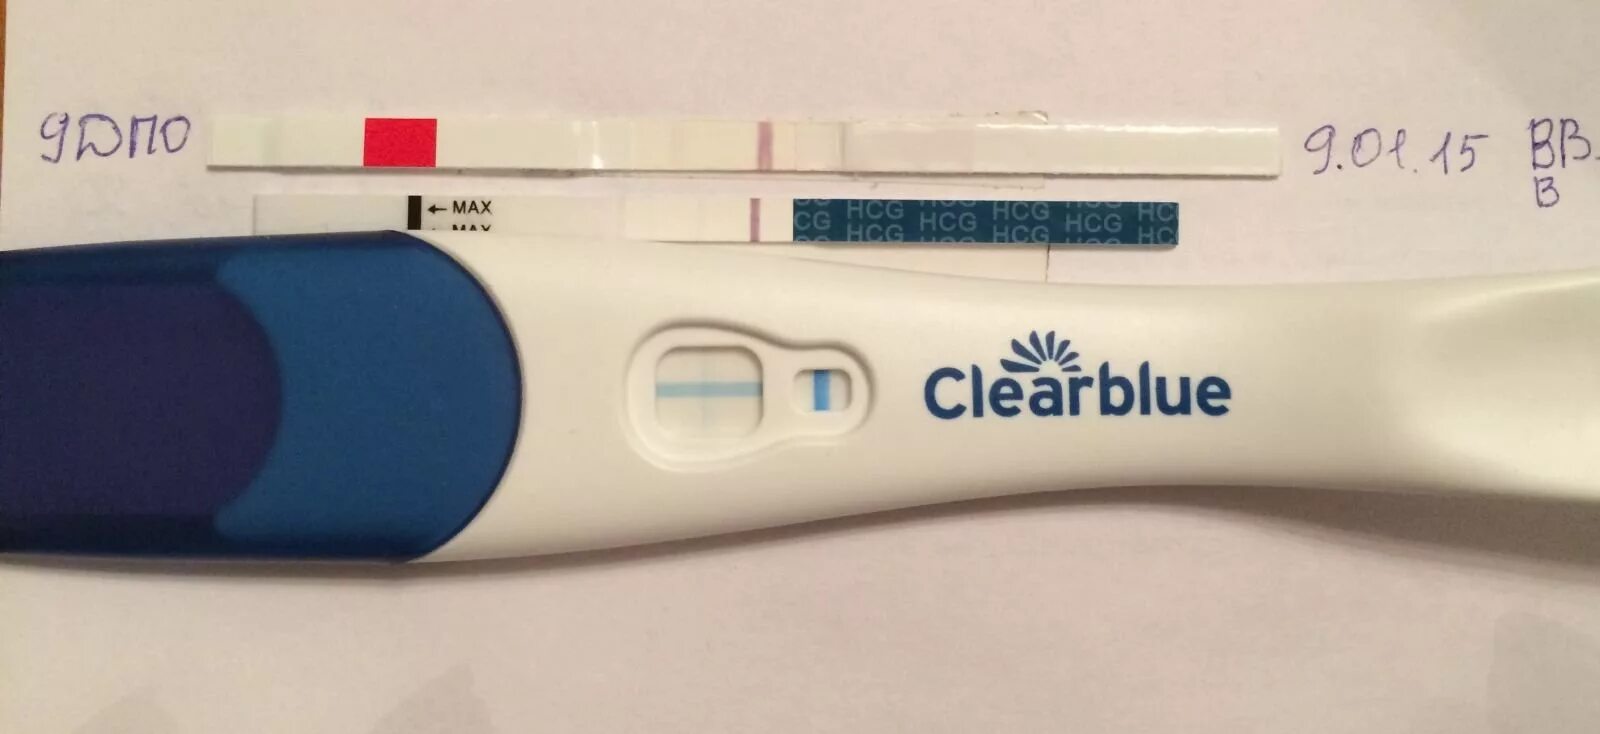 Клеа Блю плюс 10 ДПО. Тест Клеа Блю 9 ДПО. Clearblue тест на беременность 9 ДПО. Тест Clearblue 10 ДПО.